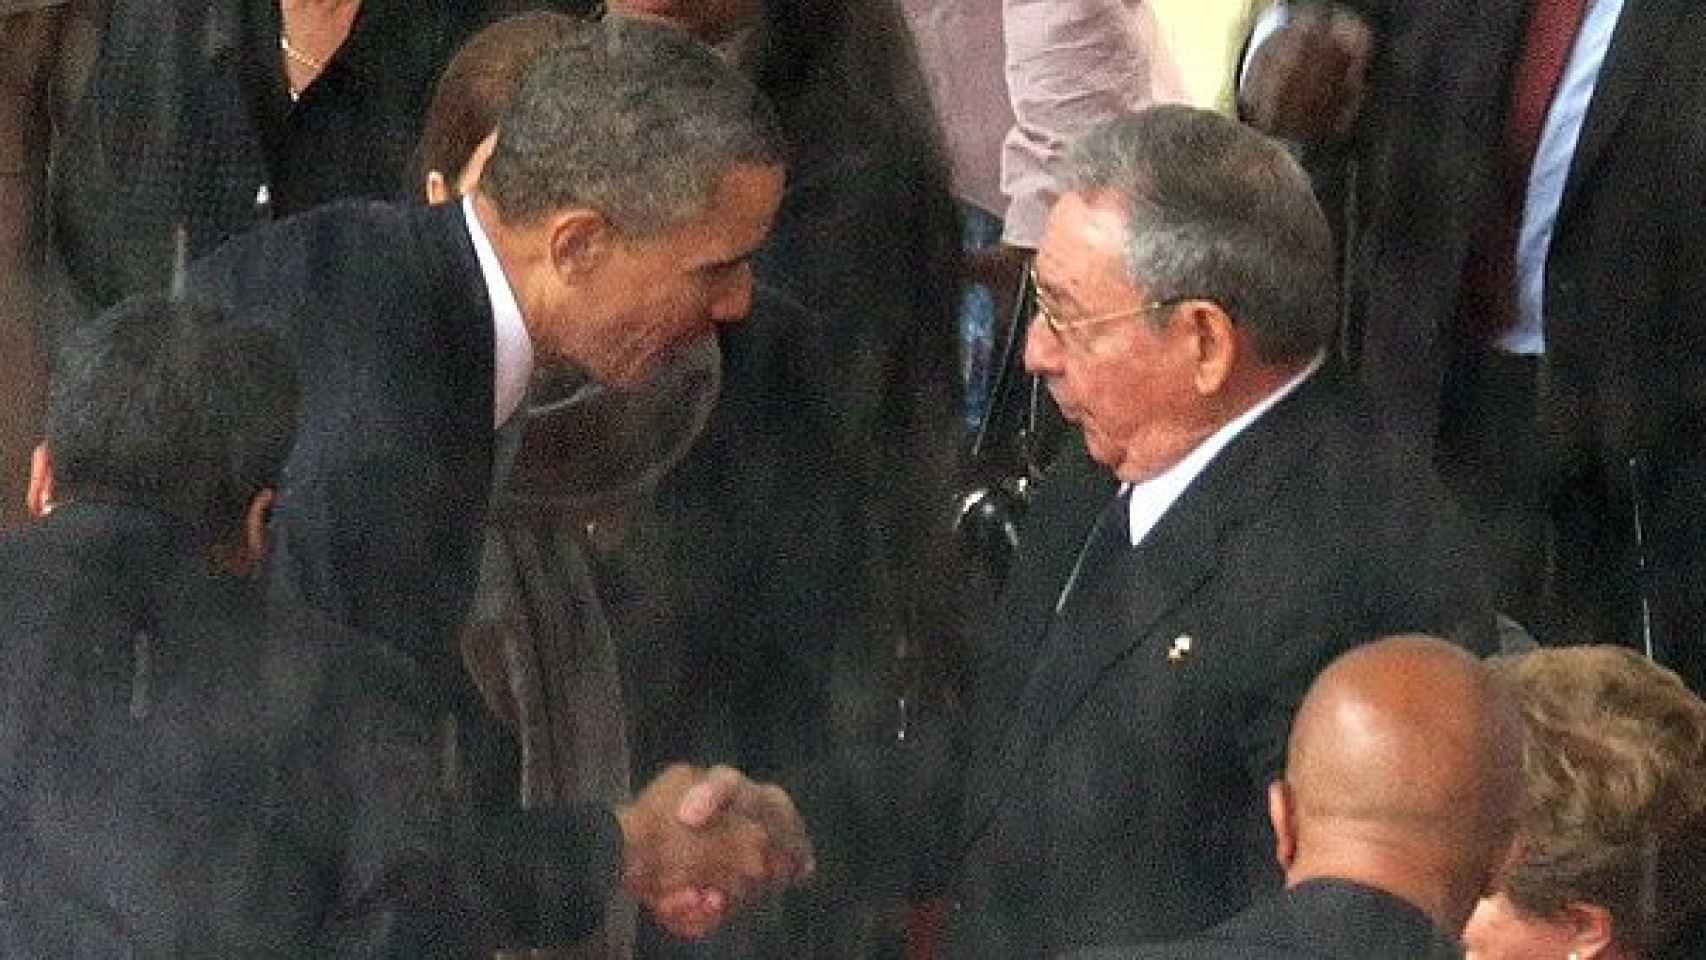 Momento en el que Obama estrecha la mano de Castro, en Johannesburgo